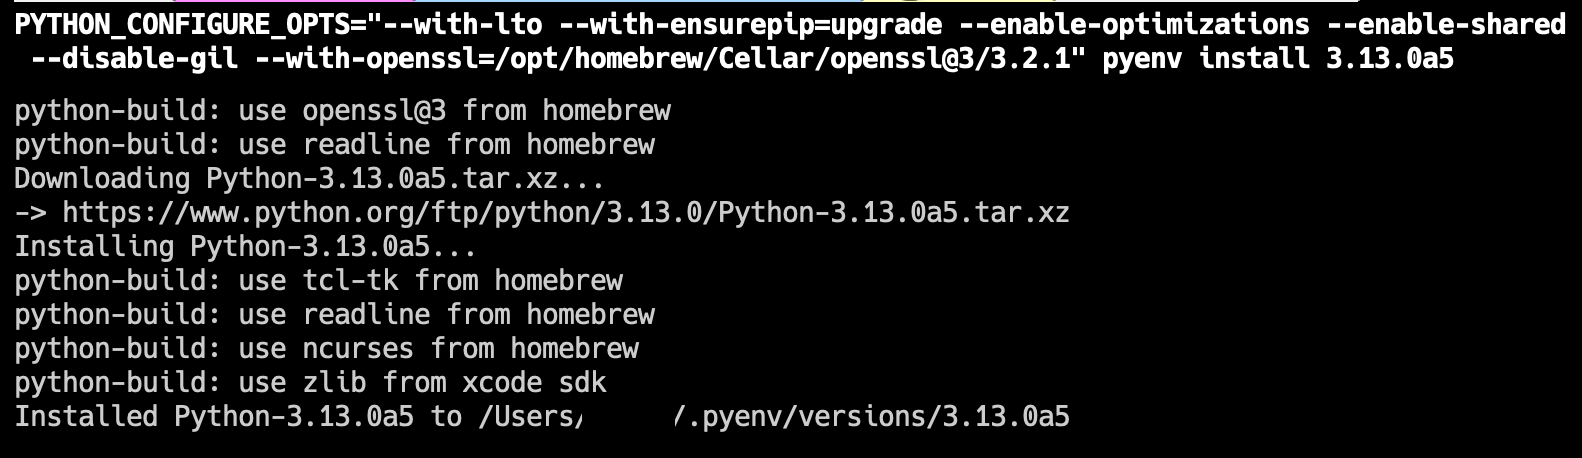 pyenv install cpython 3.13a5